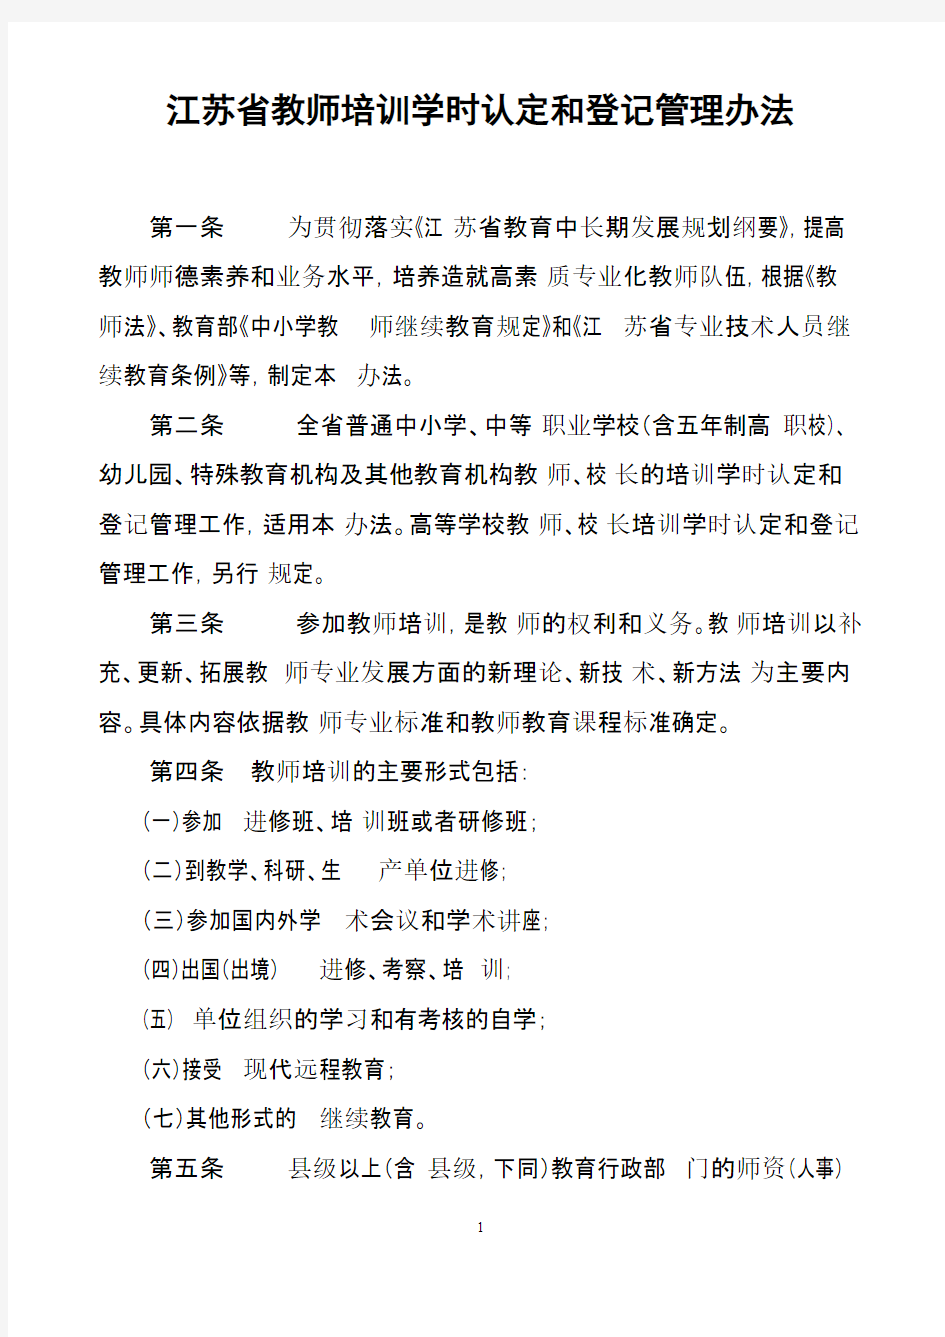 江苏省中小学教师继续教育学时认定管理办法(正式印发稿)(1)-推荐下载